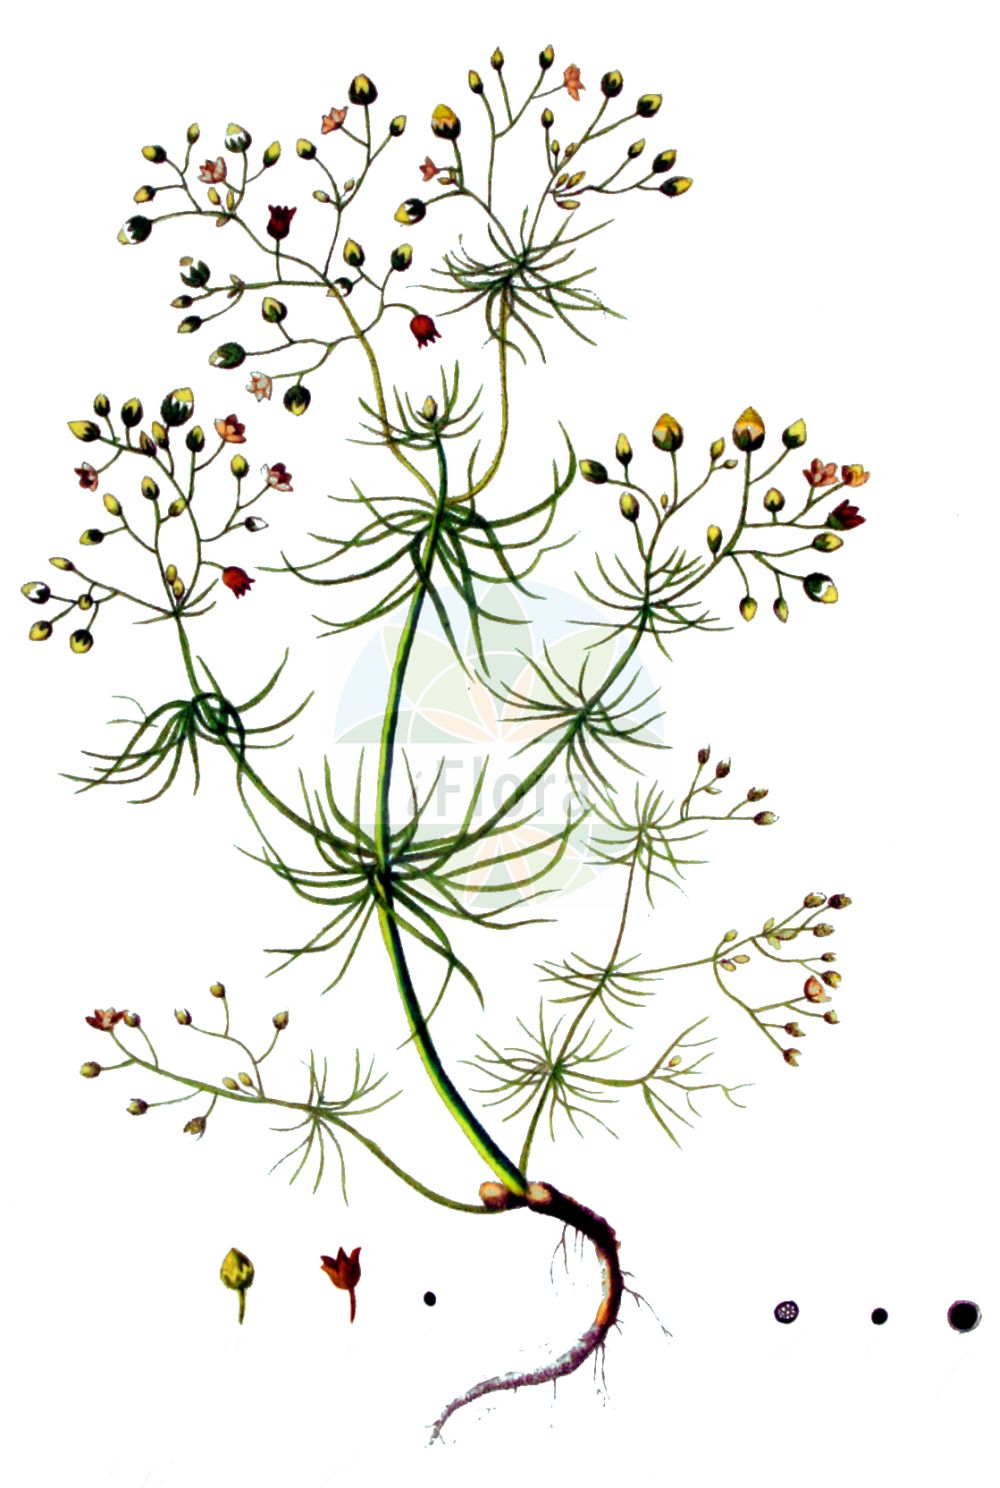 Historische Abbildung von Spergula arvensis (Acker-Spark - Corn Spurrey). Das Bild zeigt Blatt, Bluete, Frucht und Same. ---- Historical Drawing of Spergula arvensis (Acker-Spark - Corn Spurrey). The image is showing leaf, flower, fruit and seed.(Spergula arvensis,Acker-Spark,Corn Spurrey,Spergula arvensis,Spergula chieusseana,Spergula laricina,Spergula linicola,Spergula maxima,Spergula sativa,Spergula vulgaris,Acker-Spark,Lein-Spergel,Corn Spurrey,Corn Spurry,Sandweed,Spergula,Spark,Spurry,Caryophyllaceae,Nelkengewächse,Pink family,Blatt,Bluete,Frucht,Same,leaf,flower,fruit,seed,Kops (1800-1934))